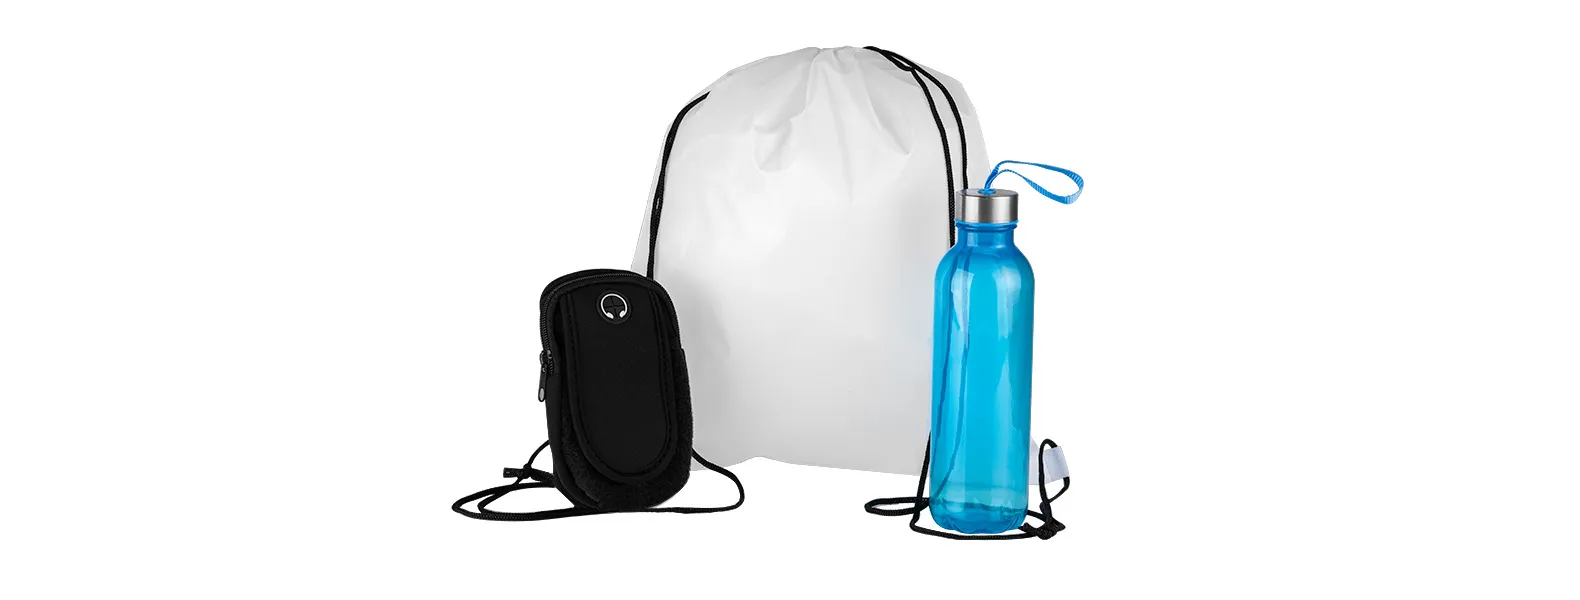 Kit boas vindas. Conta com mochila em nylon 420 branca; garrafa pet na cor azul e braçadeira esportiva para celular.